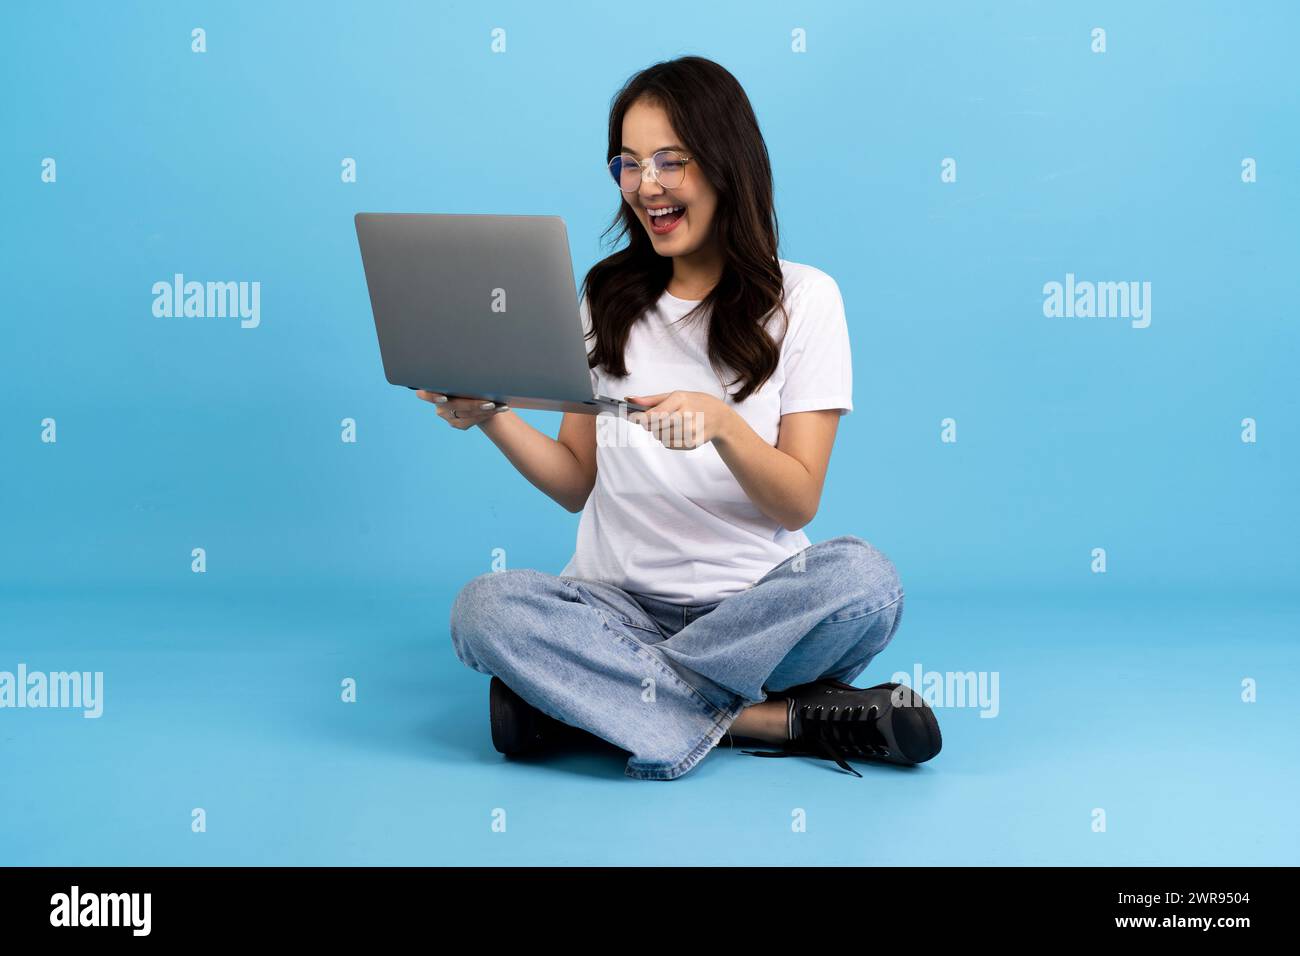 Schönes Mädchen glücklich mit einem Notebook, das auf einem blauen Hintergrund sitzt, sitzen und lächeln mit einer entspannten Haltung Genießen Sie das Surfen im Internet. Stockfoto